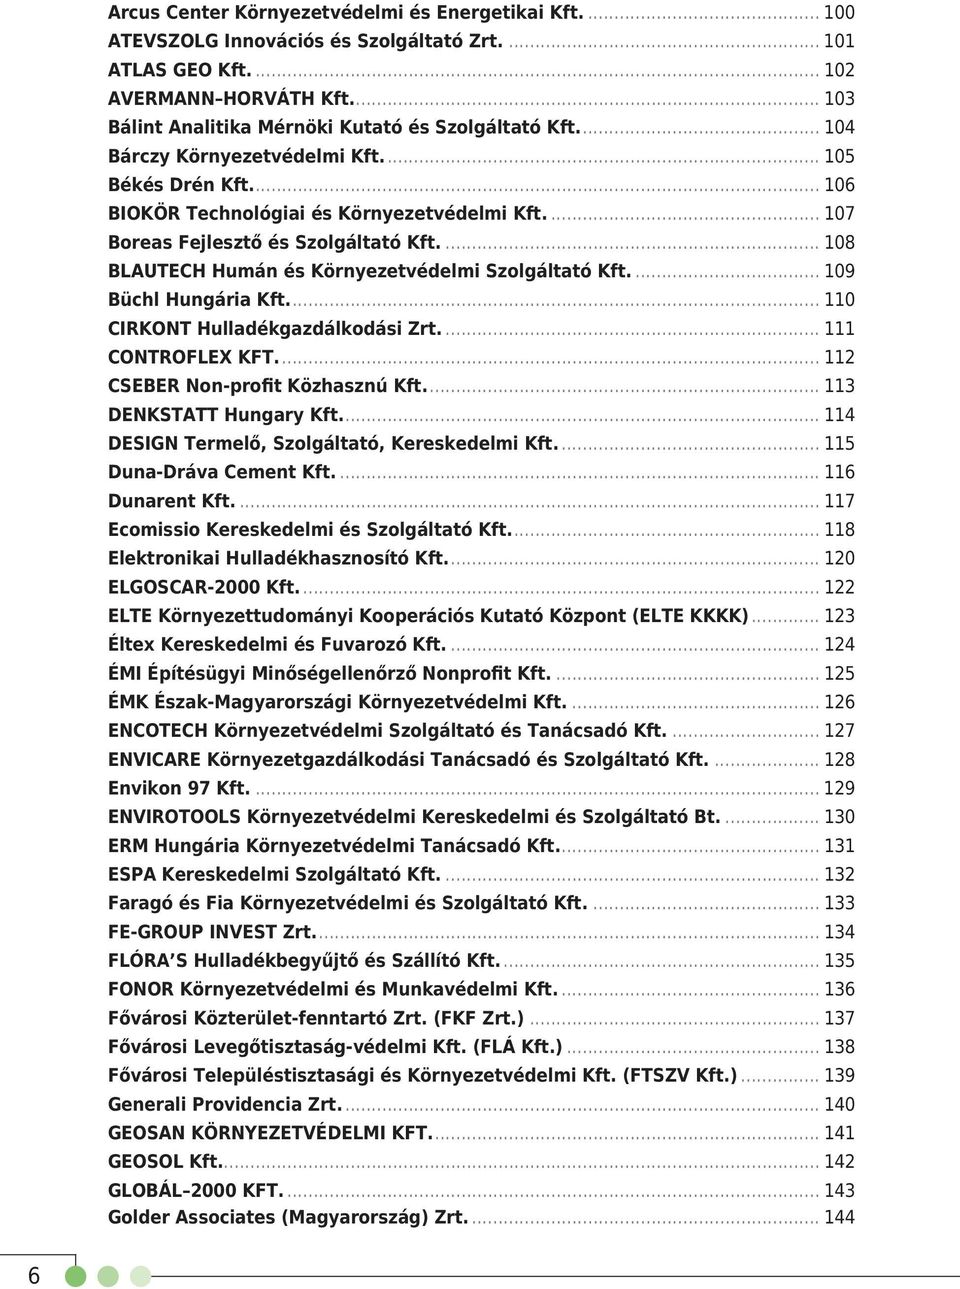 ... 107 Boreas Fejlesztő és Szolgáltató Kft.... 108 BLAUTECH Humán és Környezetvédelmi Szolgáltató Kft.... 109 Büchl Hungária Kft.... 110 CIRKONT Hulladékgazdálkodási Zrt.... 111 CONTROFLEX KFT.